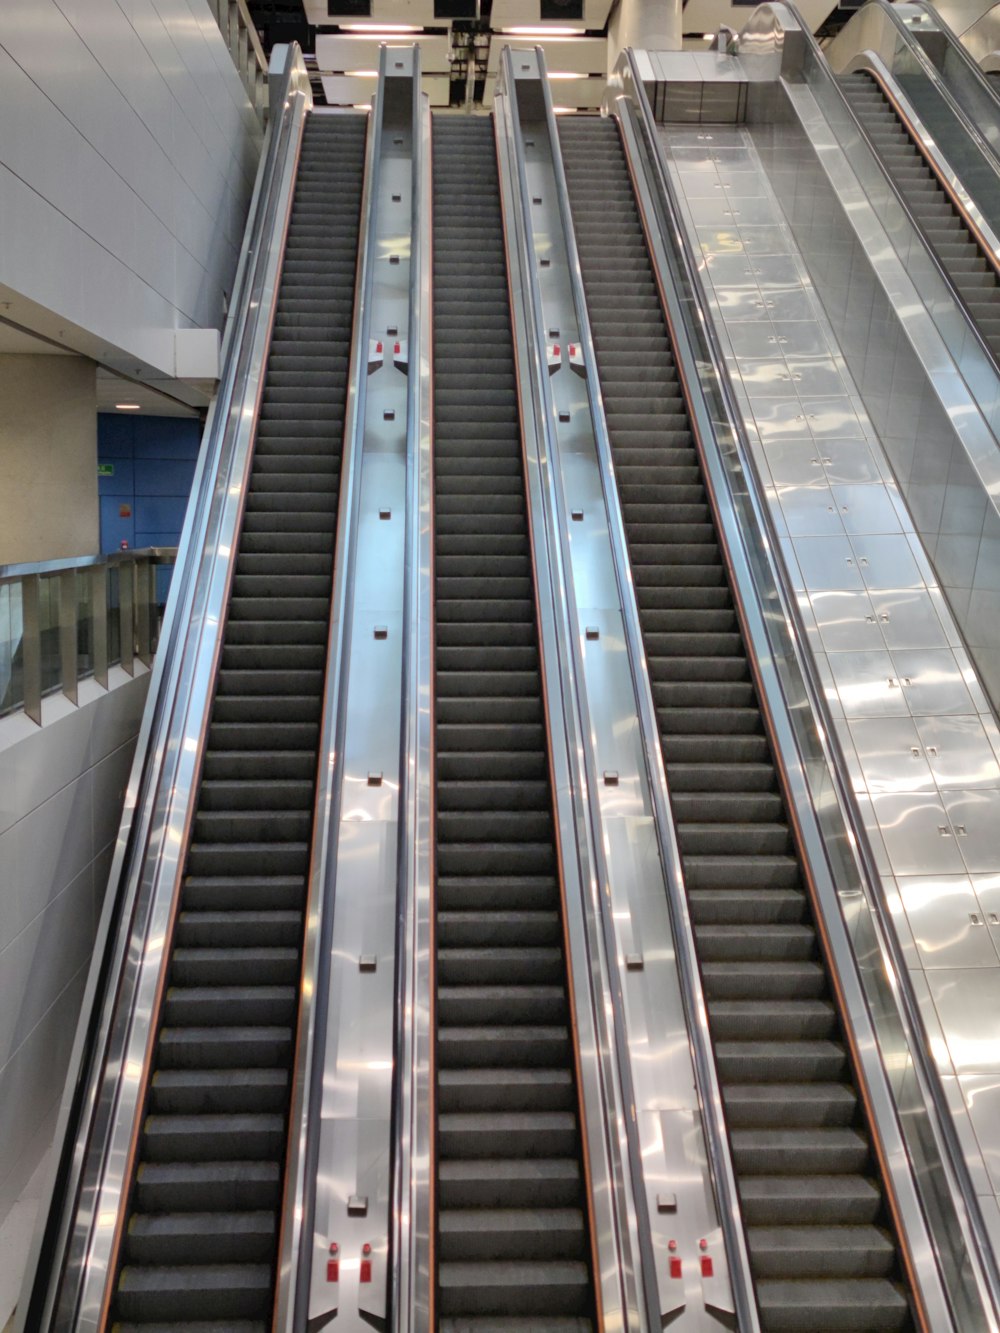 a set of escalators